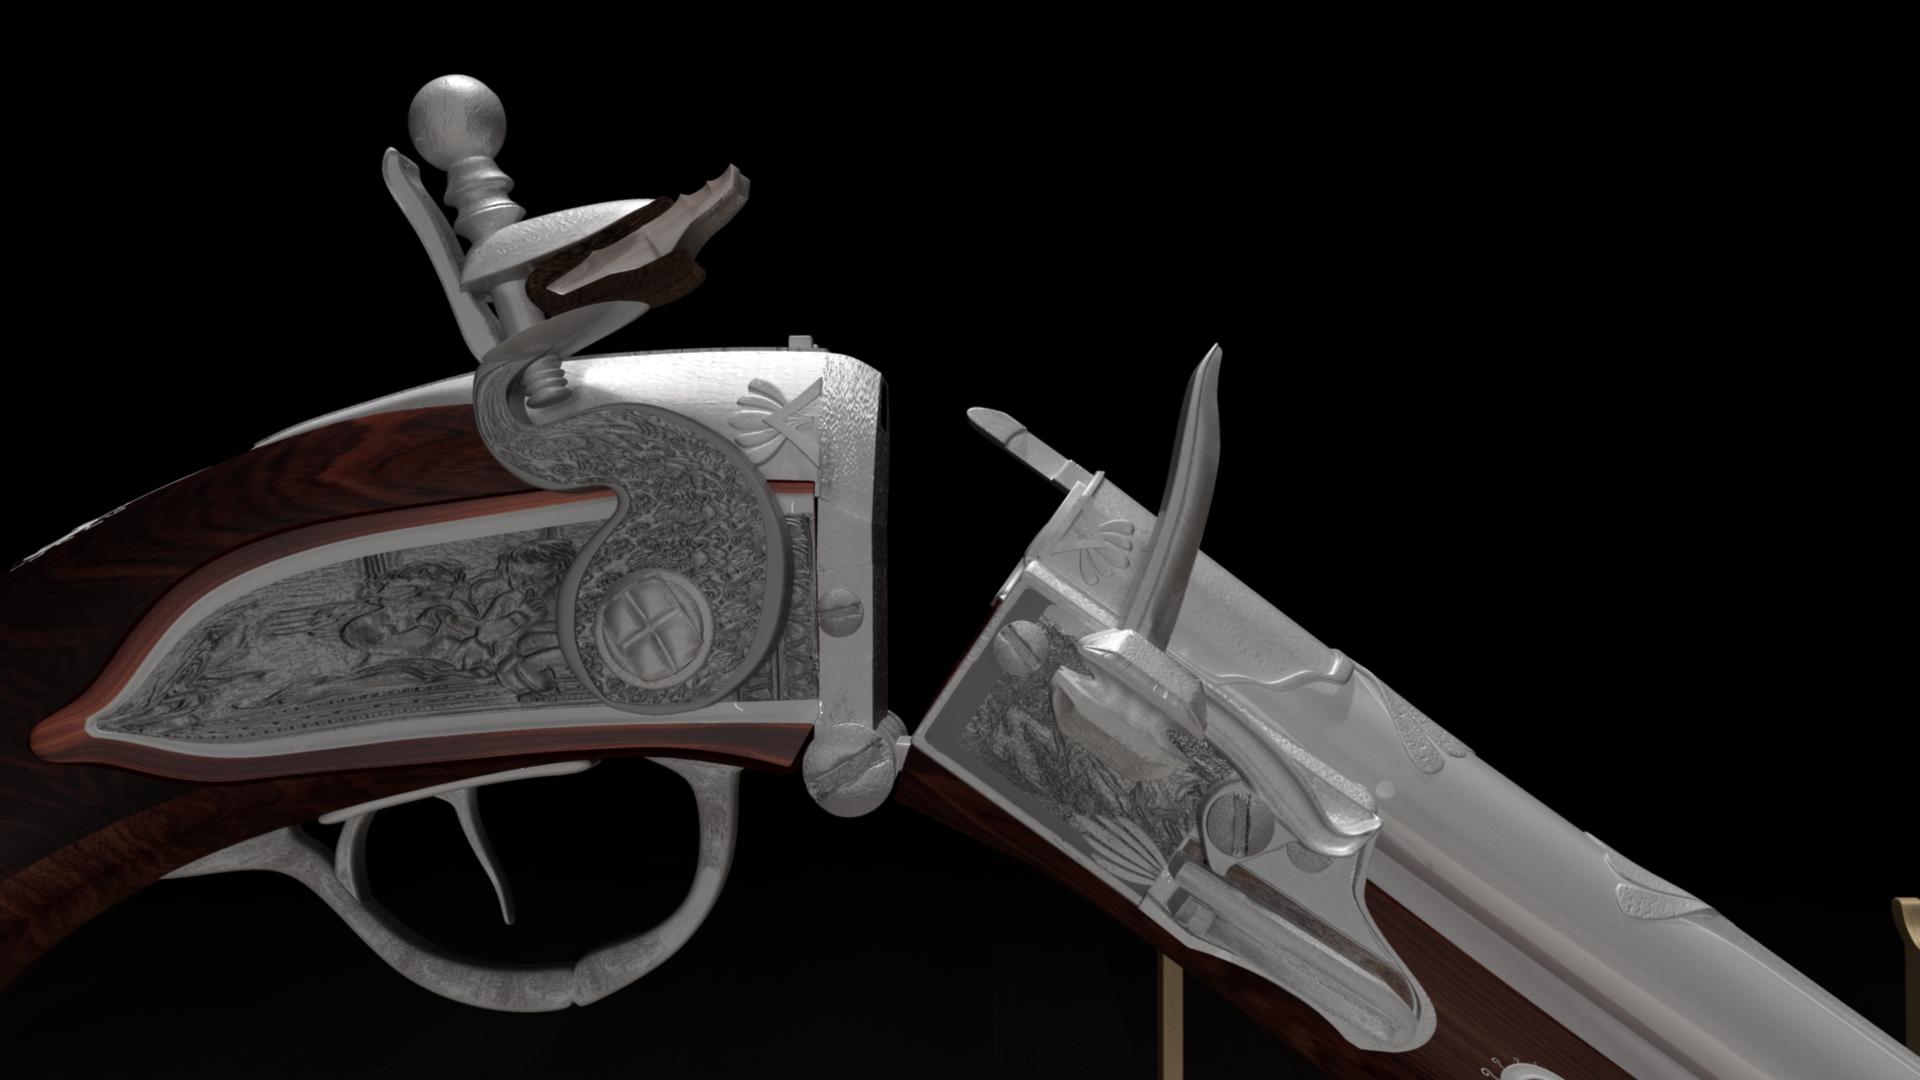 Pistolet de culasse du 18ème siècle dans Maya mental ray image